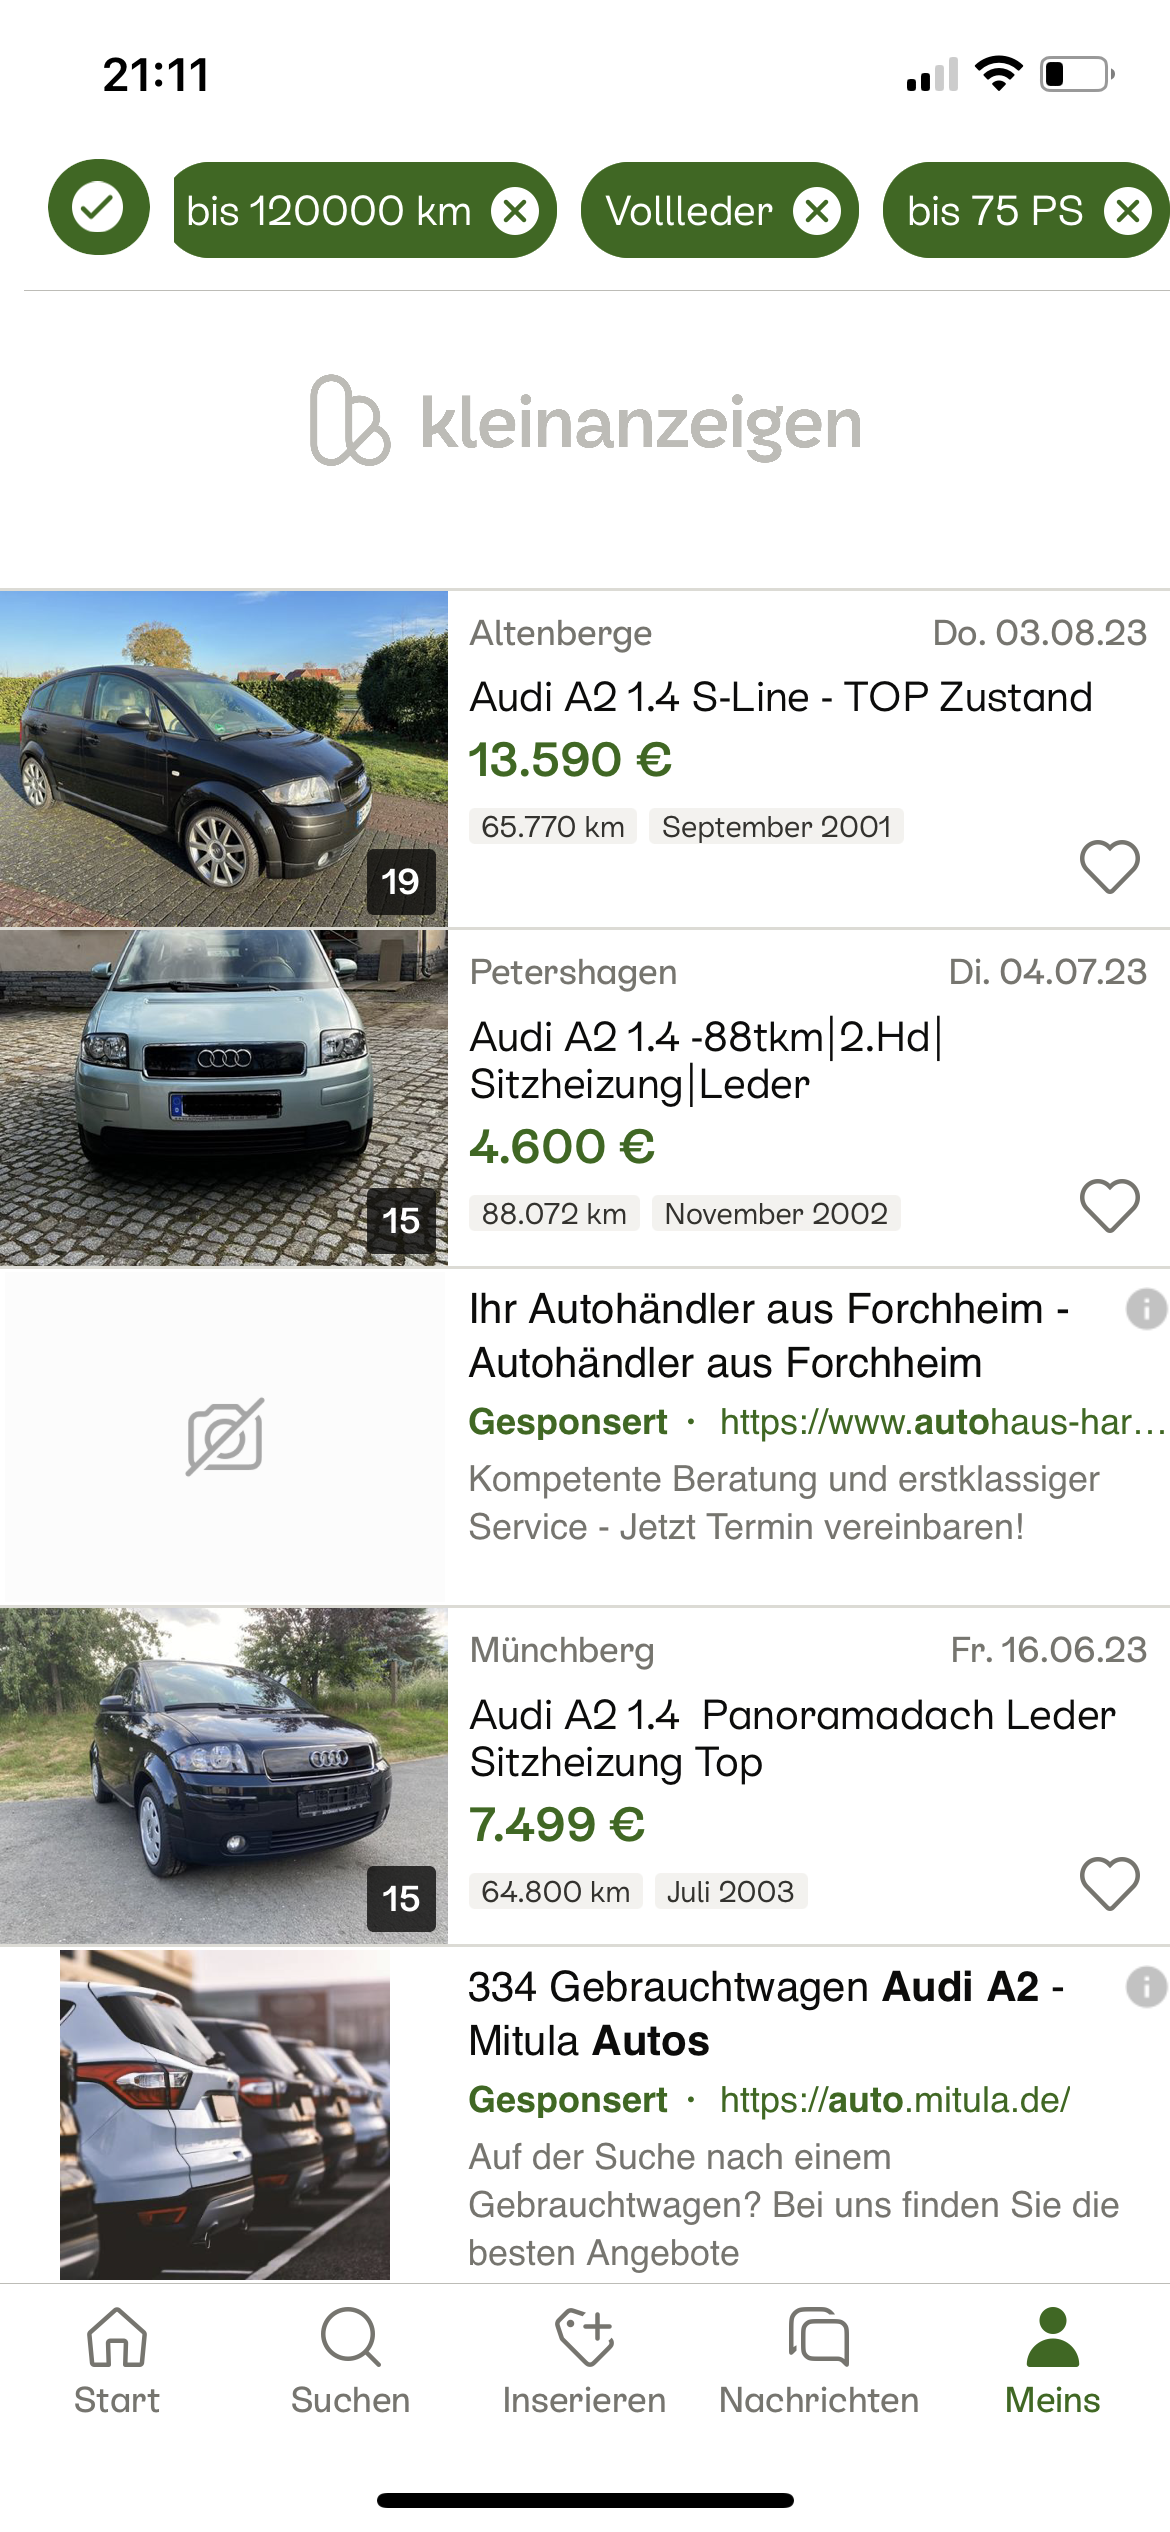 Hier wird ein A2 verkauft - könnte ja interessant sein -  Verbraucherberatung - Audi A2 Club Deutschland